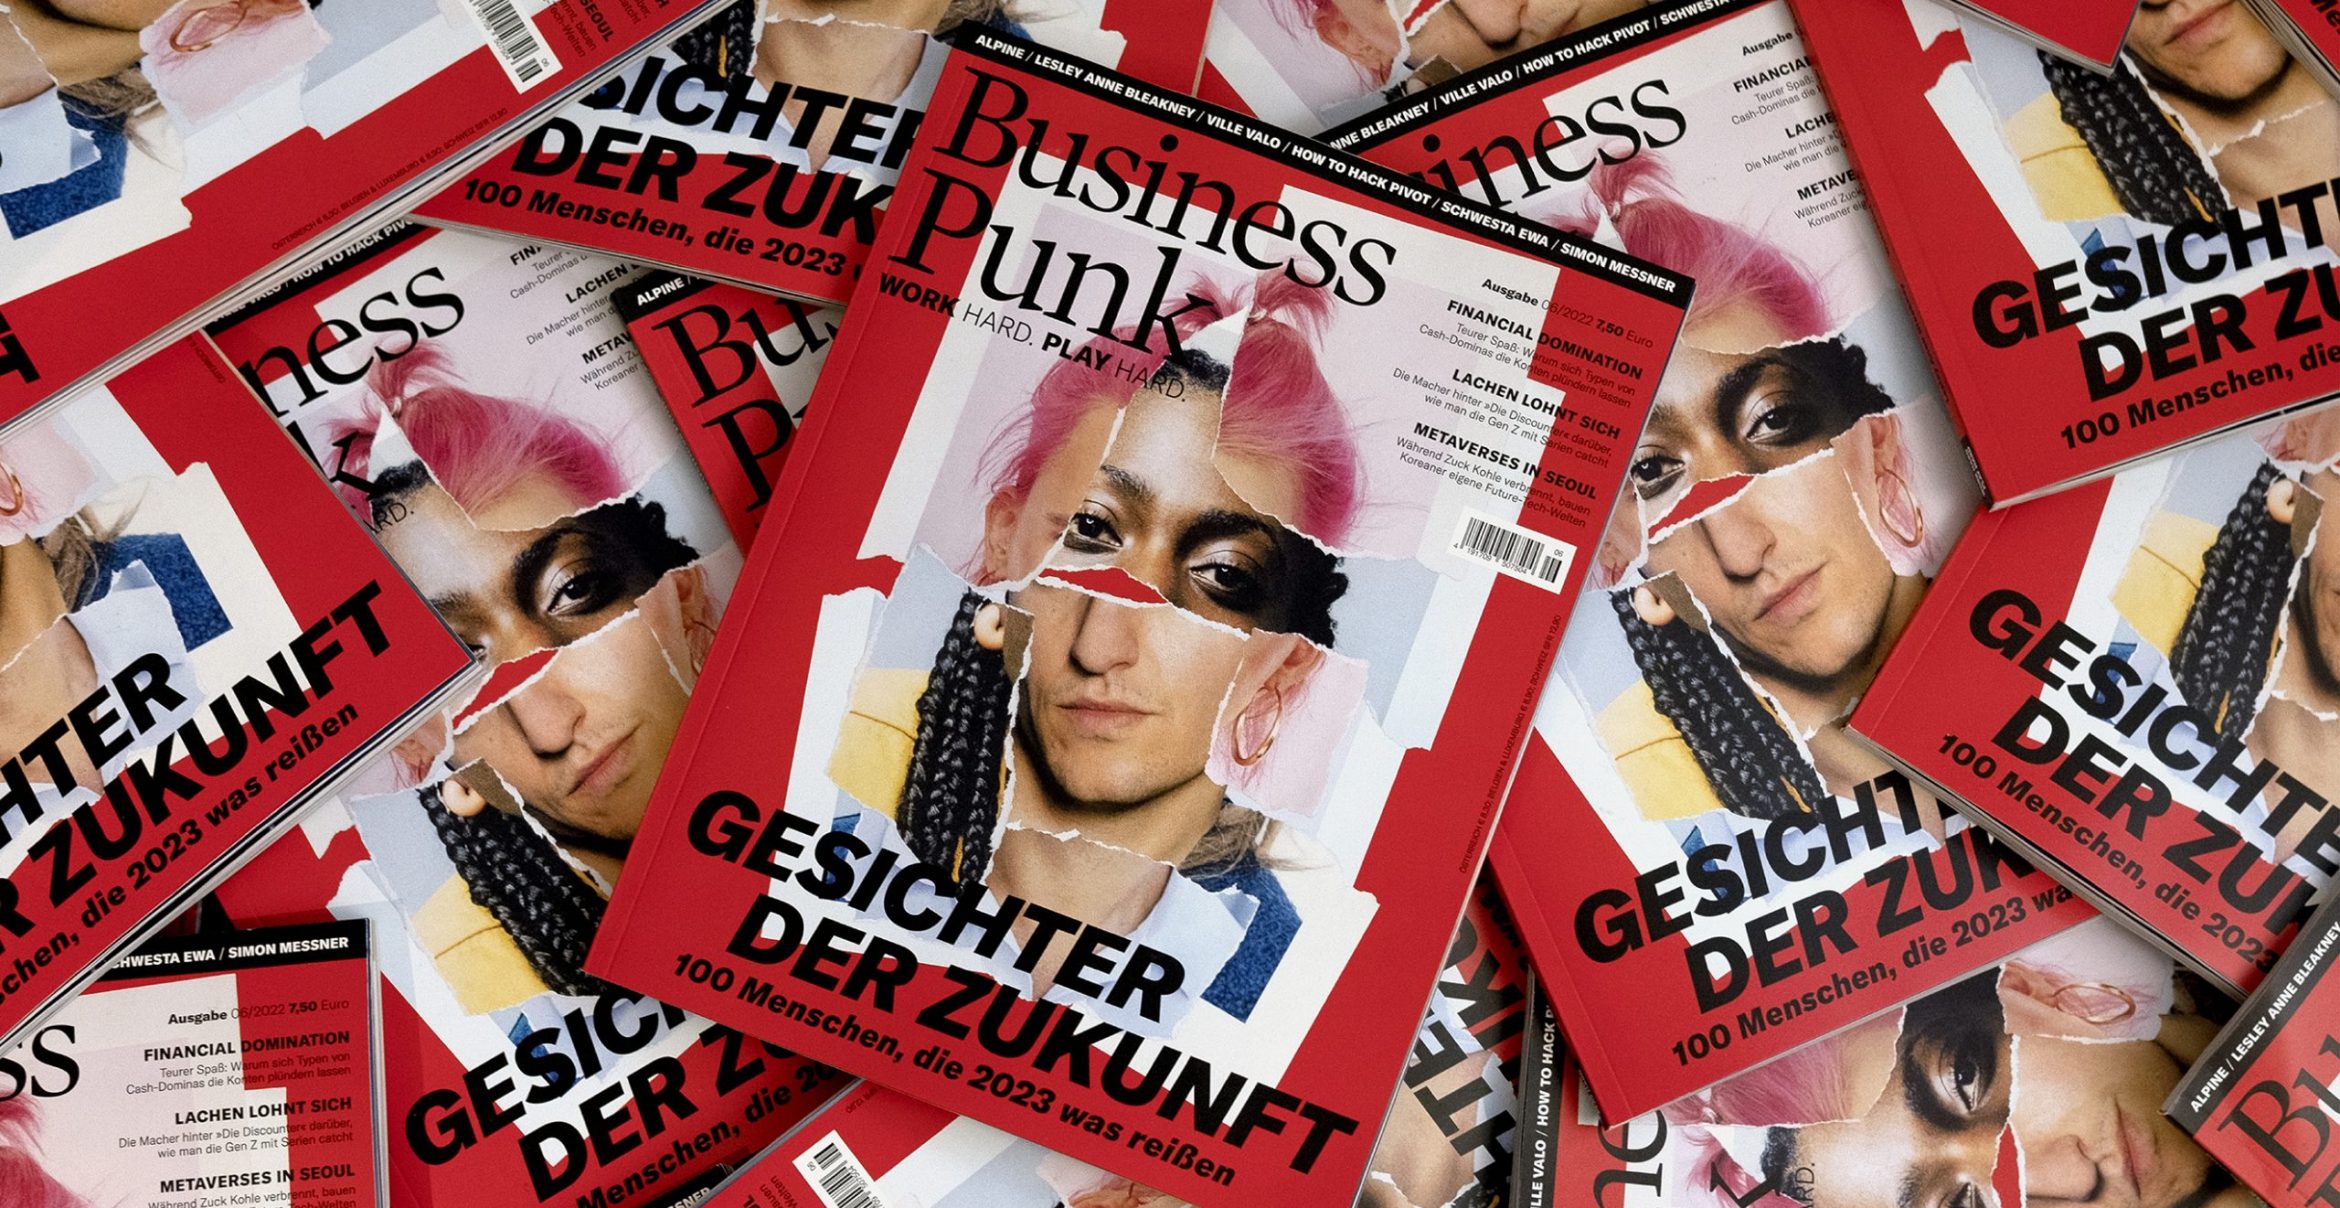 Must-Have: Die neue Ausgabe von Business Punk ist da!